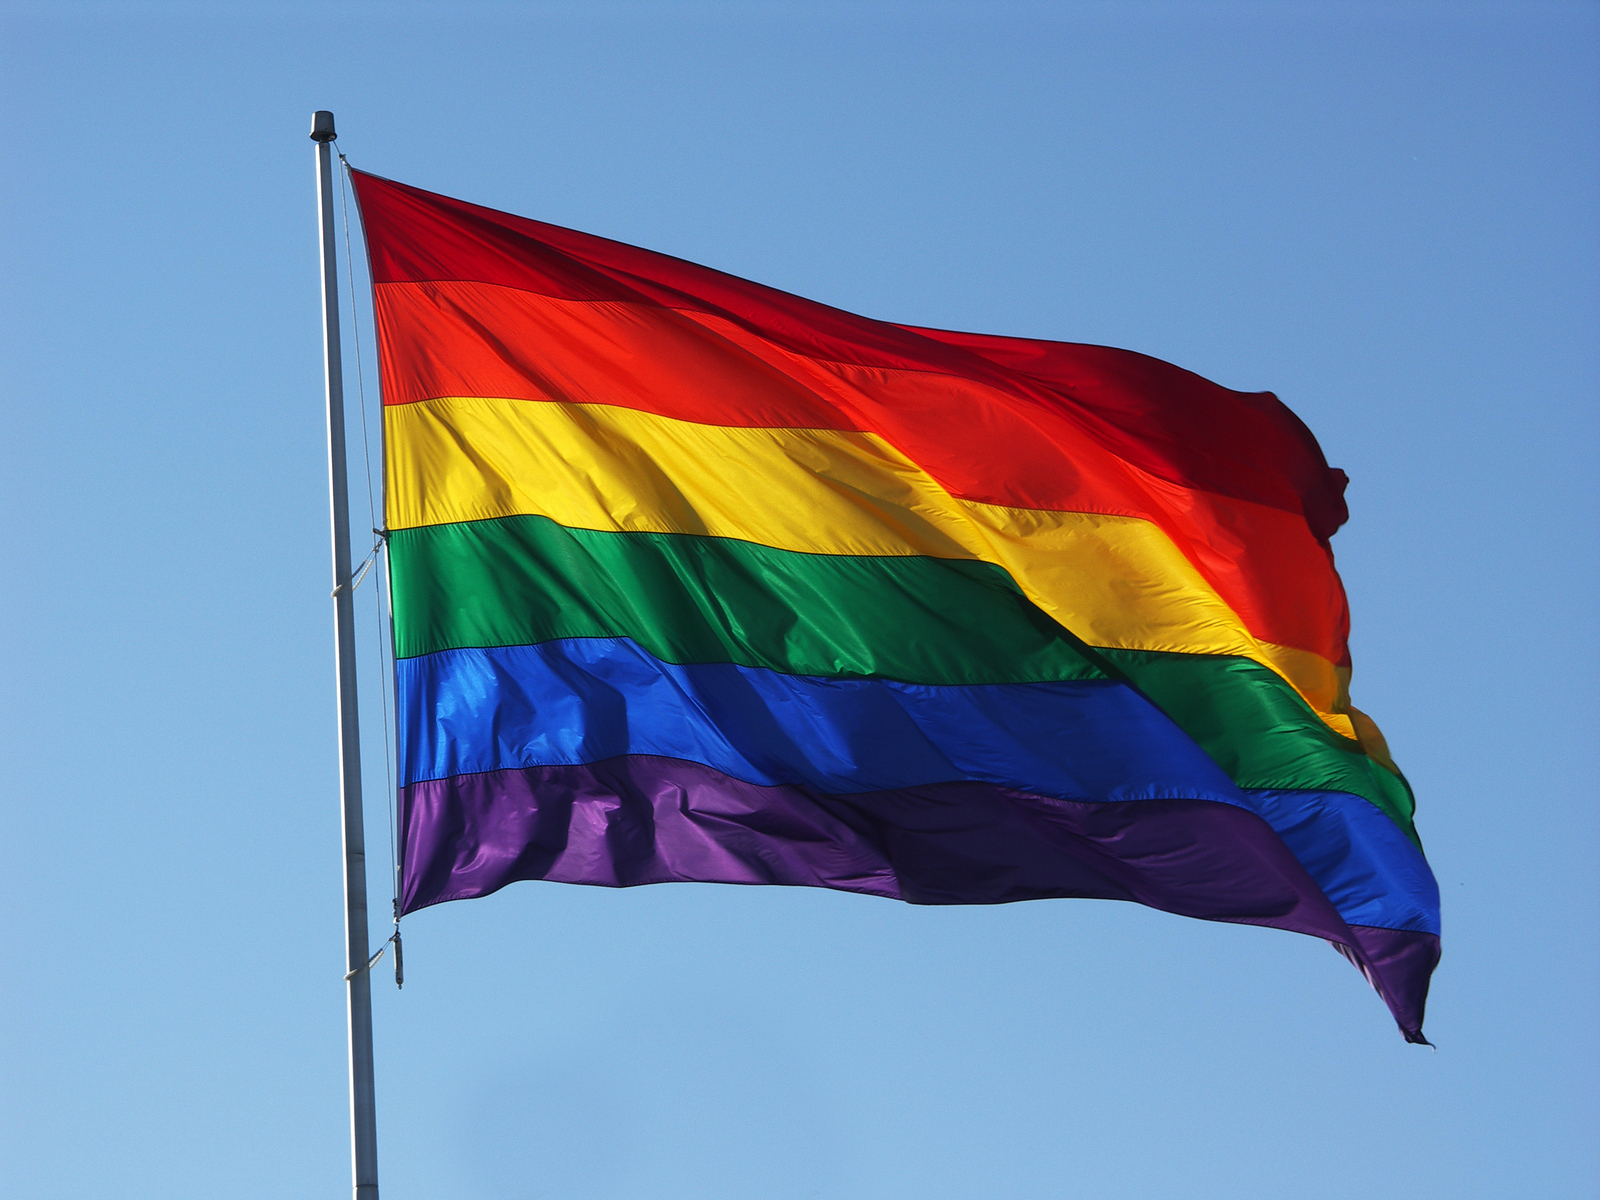 How Do Christians Respond To Pride Month?